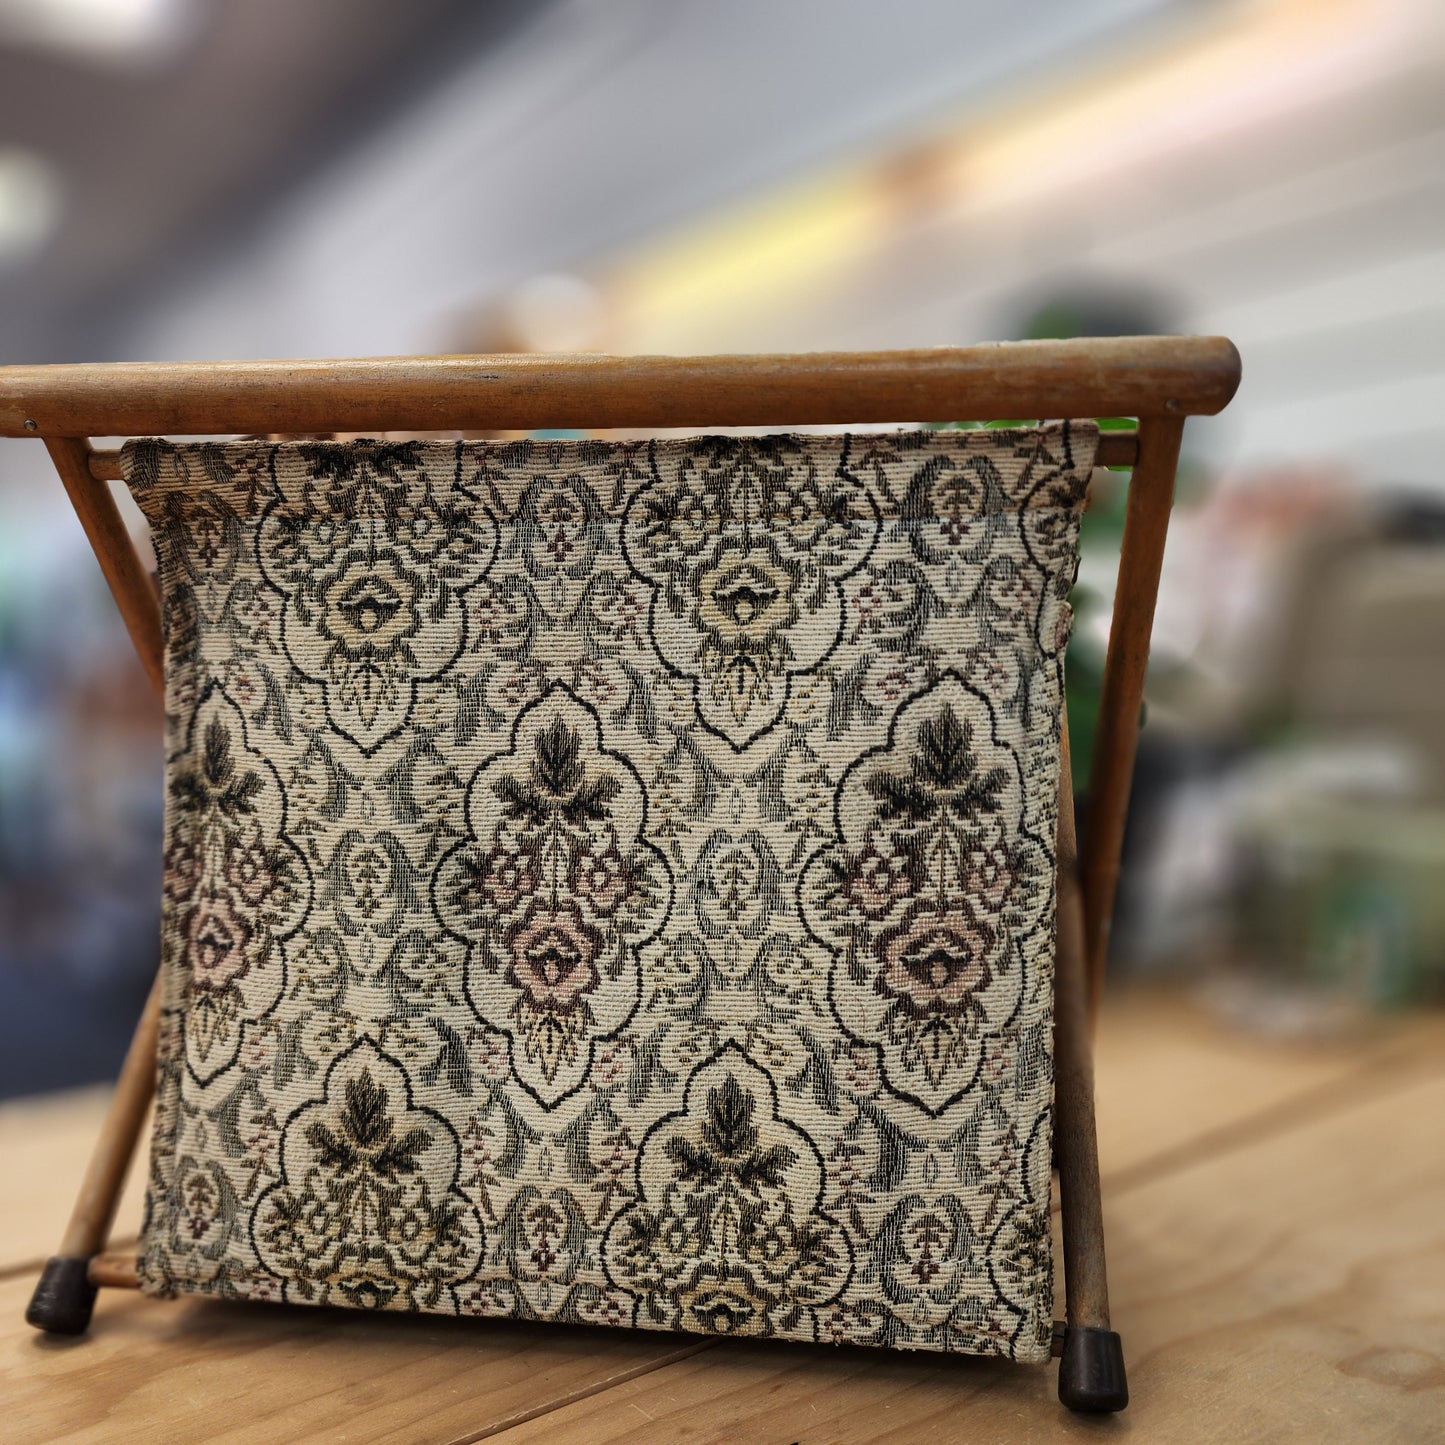 Vintage Tapestry Knitting Bag - Deco Floral